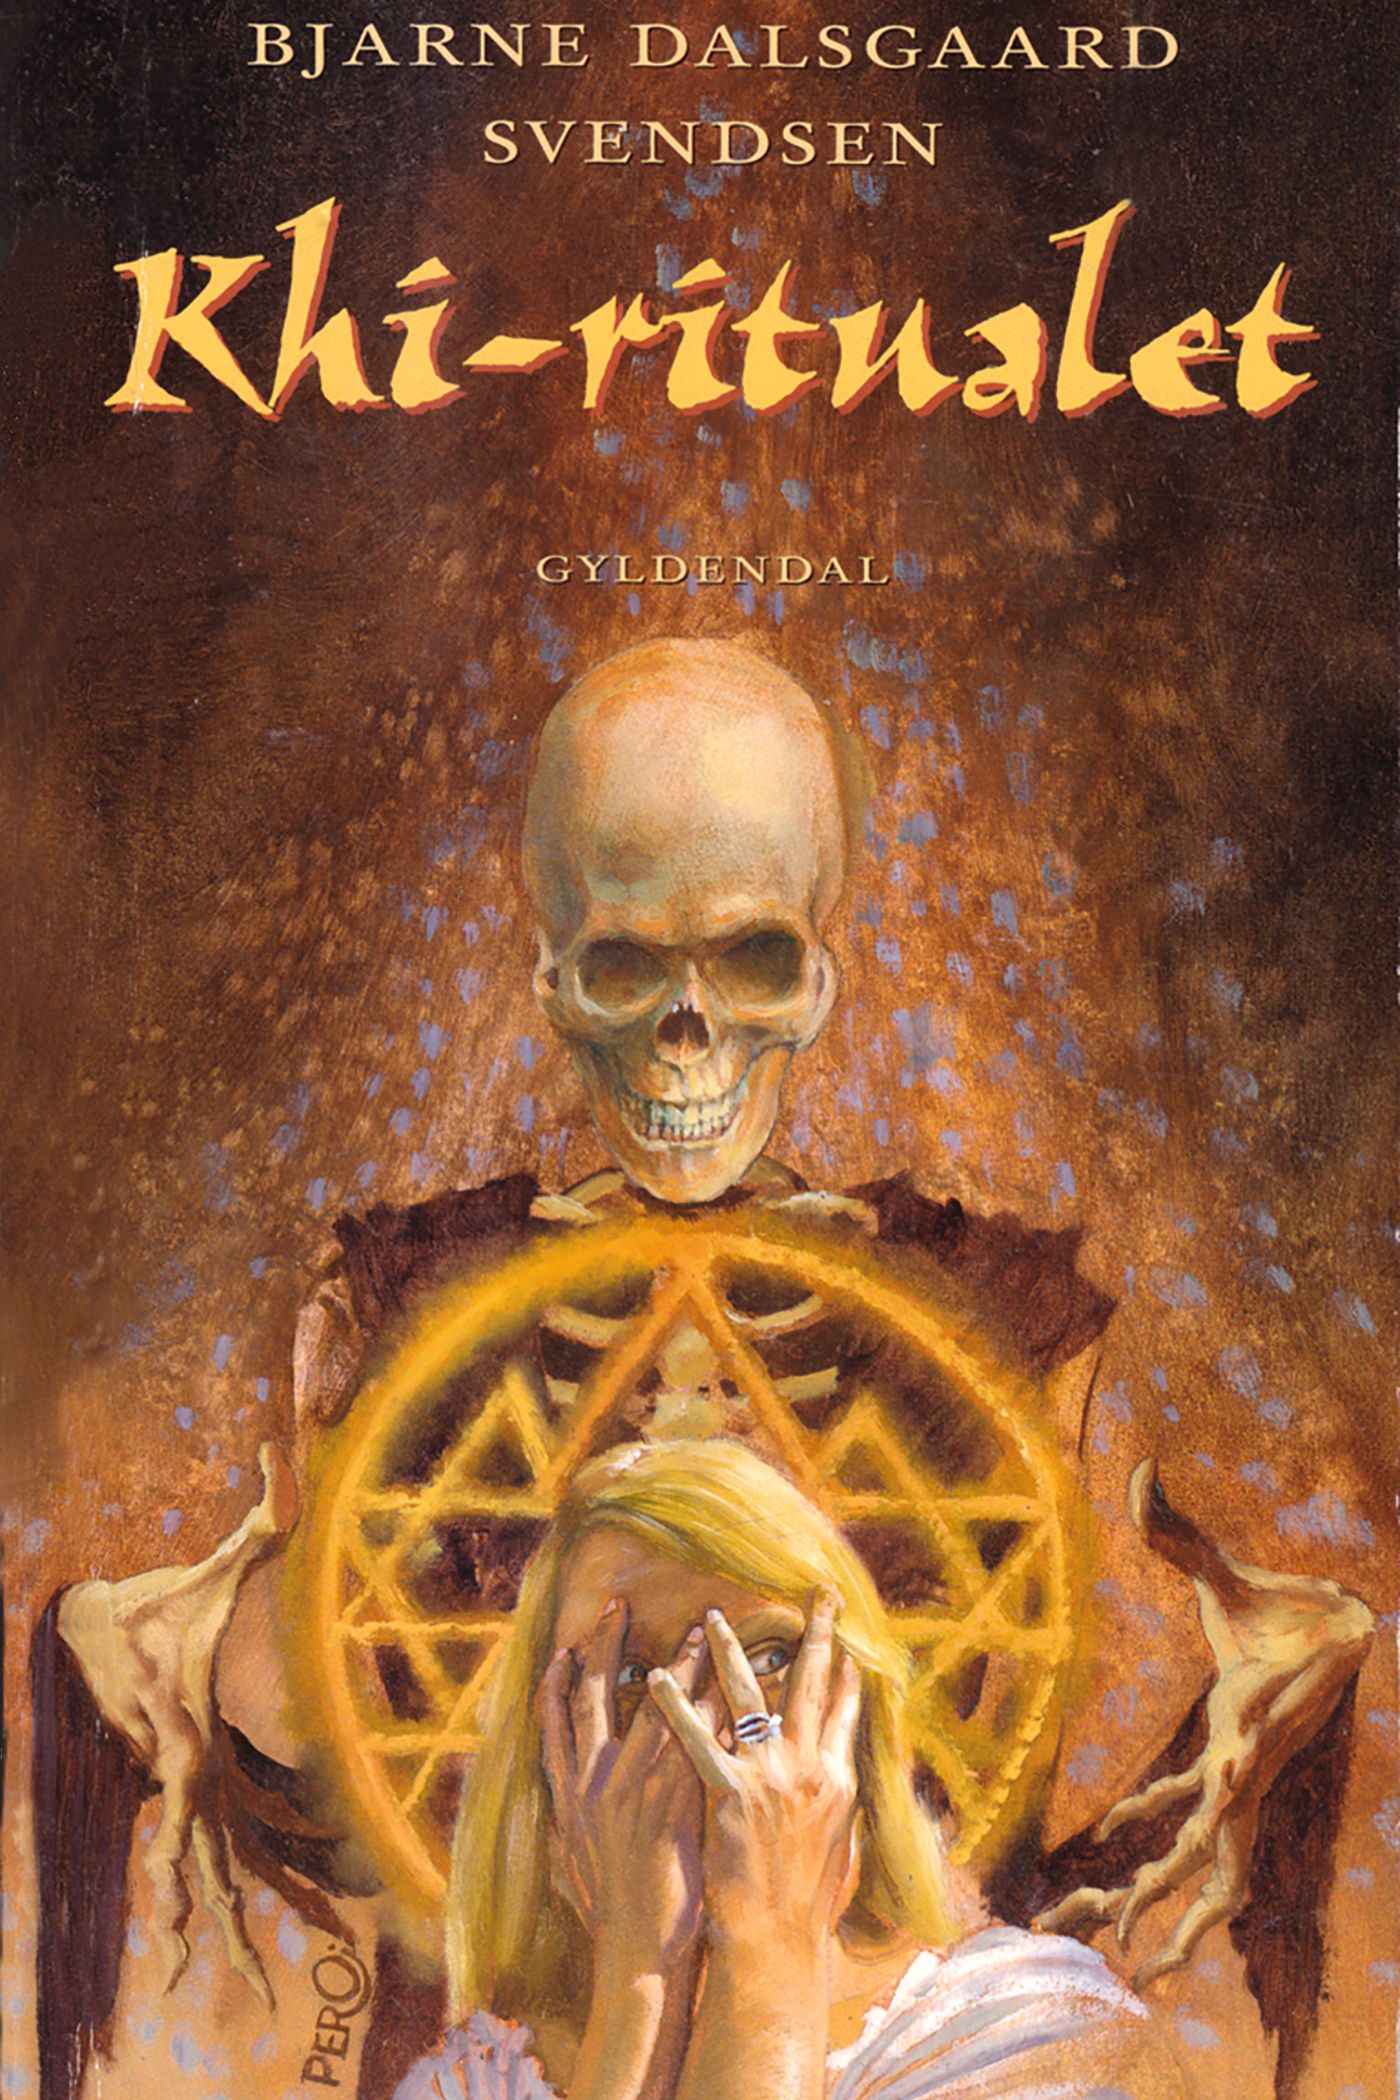 Khi-ritualet, e-bog af Bjarne Dalsgaard Svendsen